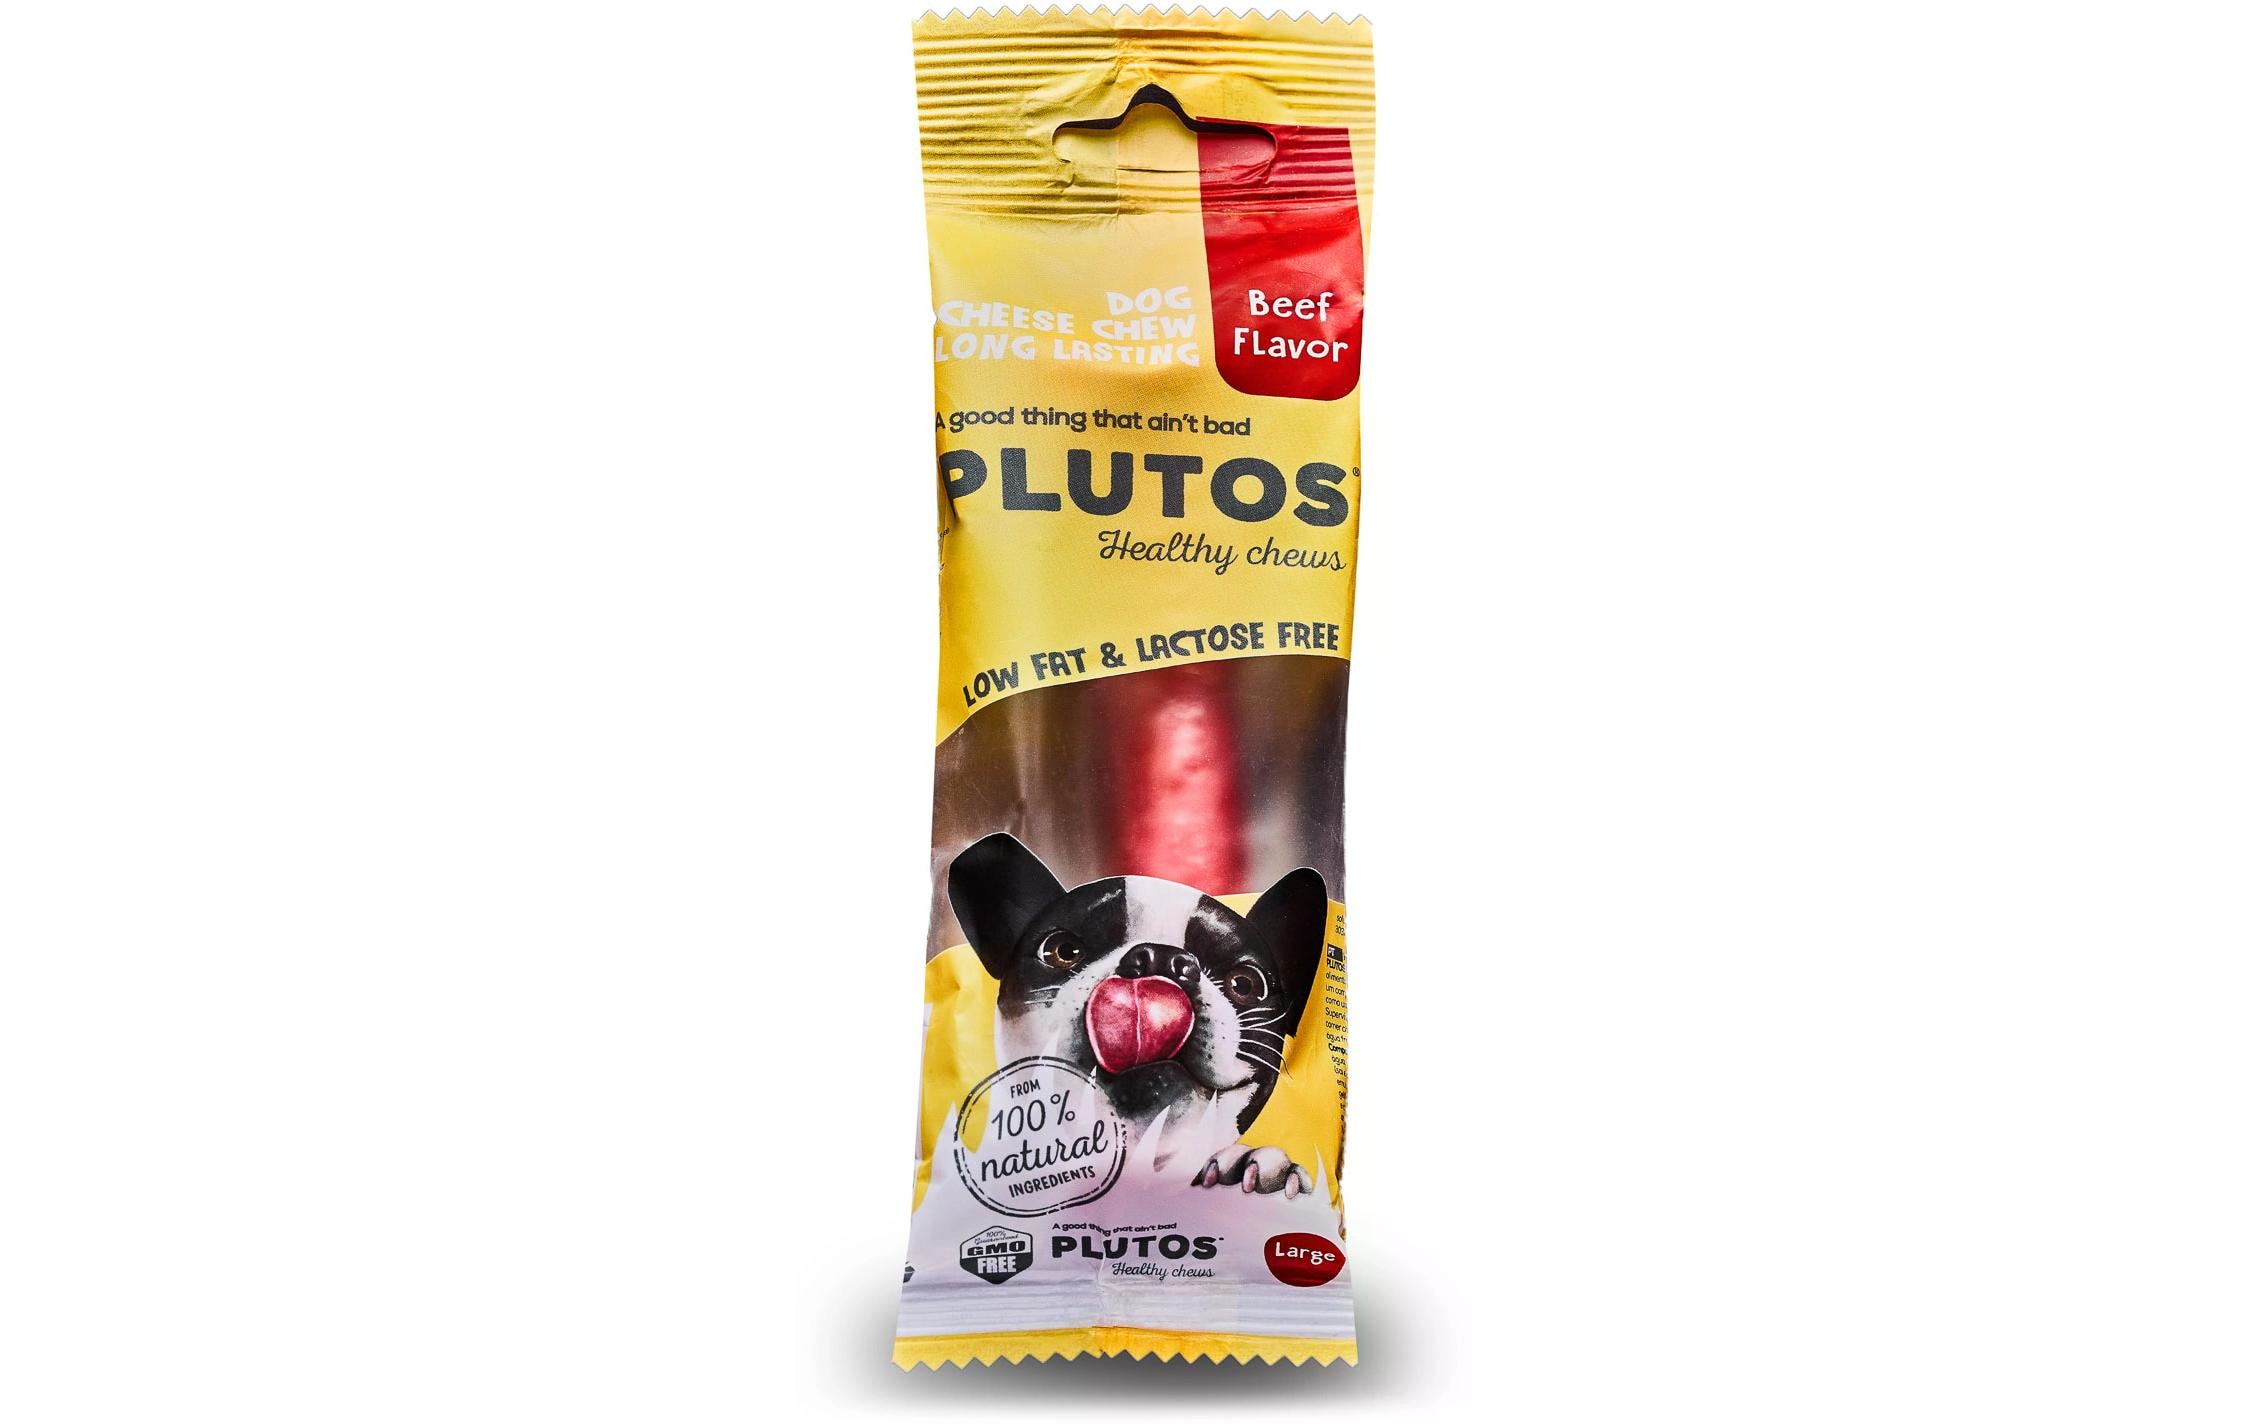 Plutos Kausnack Käse & Rind, L